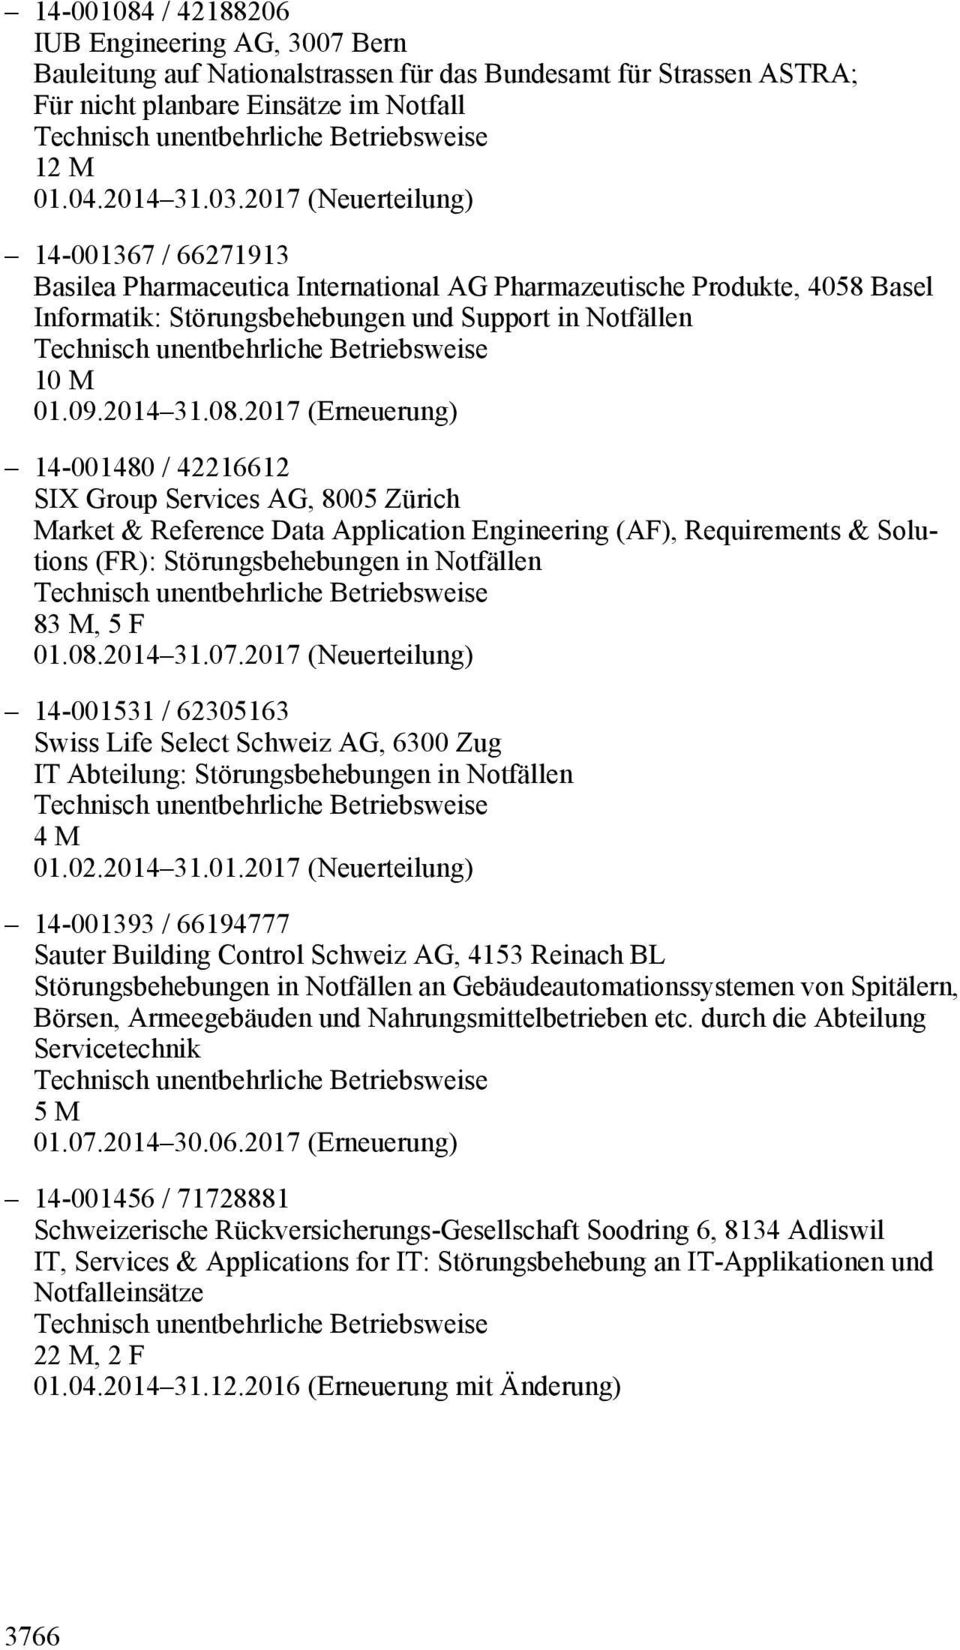 2017 (Erneuerung) 14-001480 / 42216612 Market & Reference Data Application Engineering (AF), Requirements & Solutions (FR): Störungsbehebungen in Notfällen 83 M, 5 F 01.08.2014 31.07.